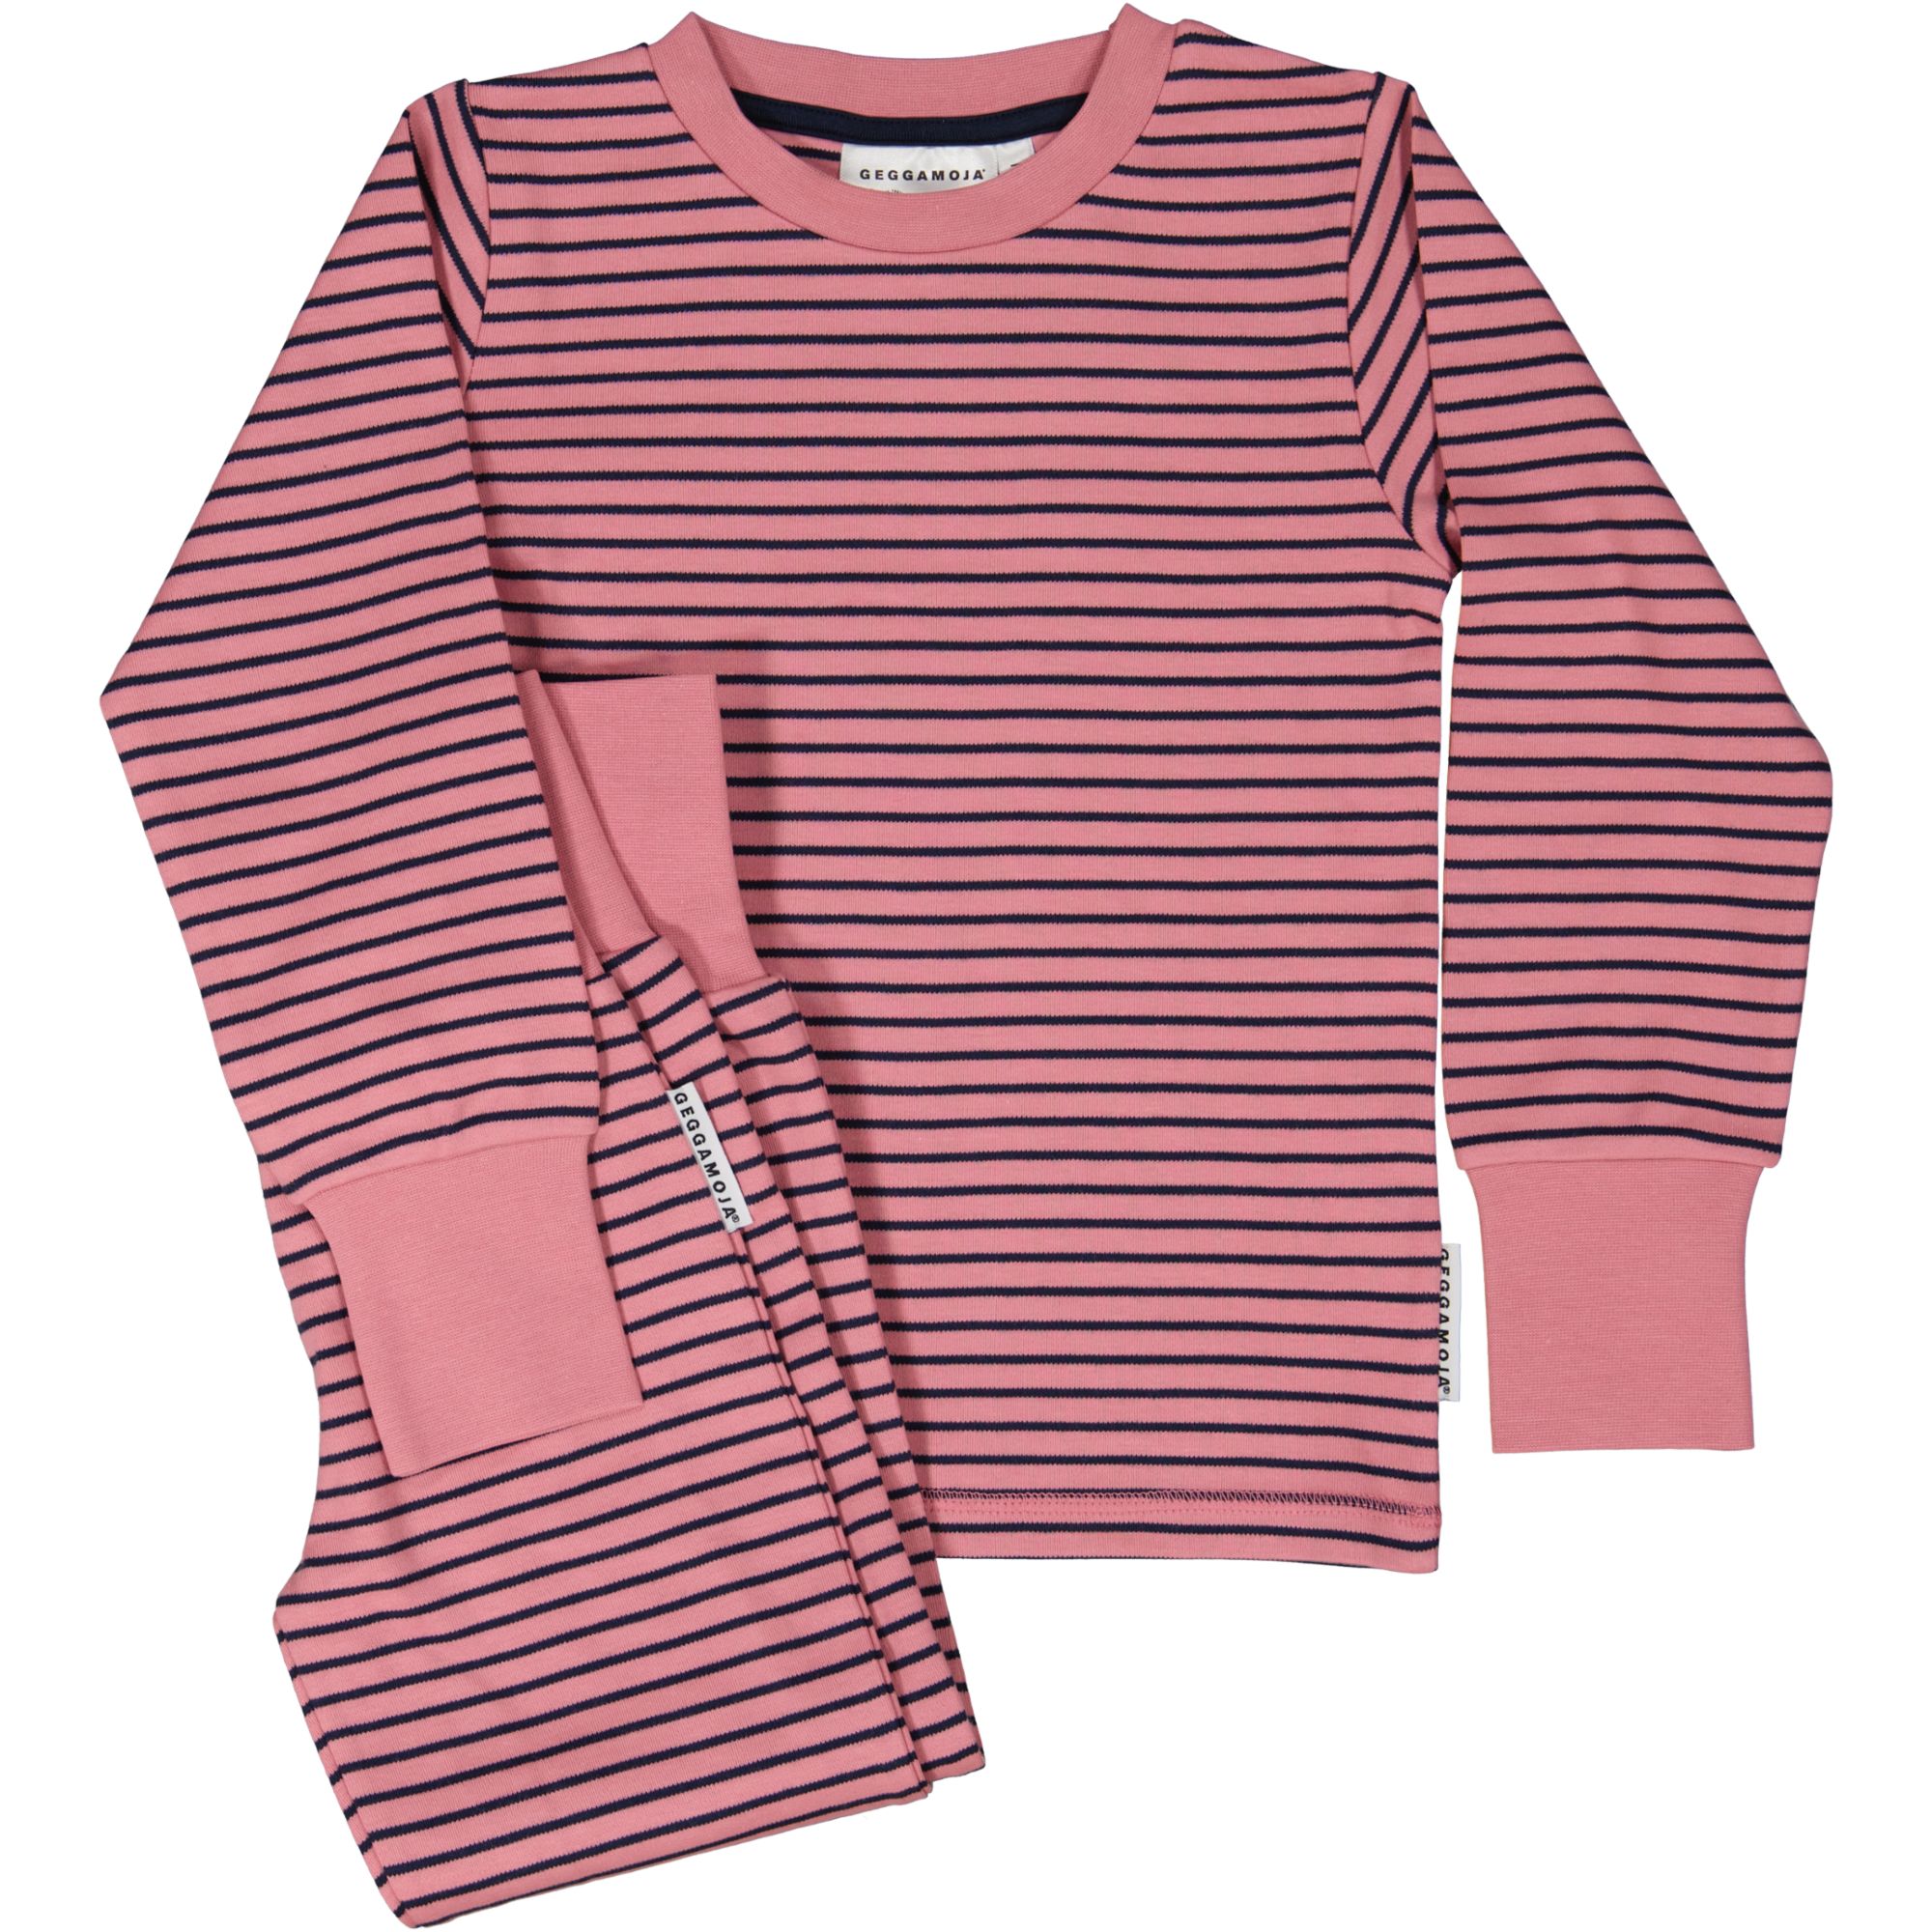 Two piece pyjamas Pink/navy